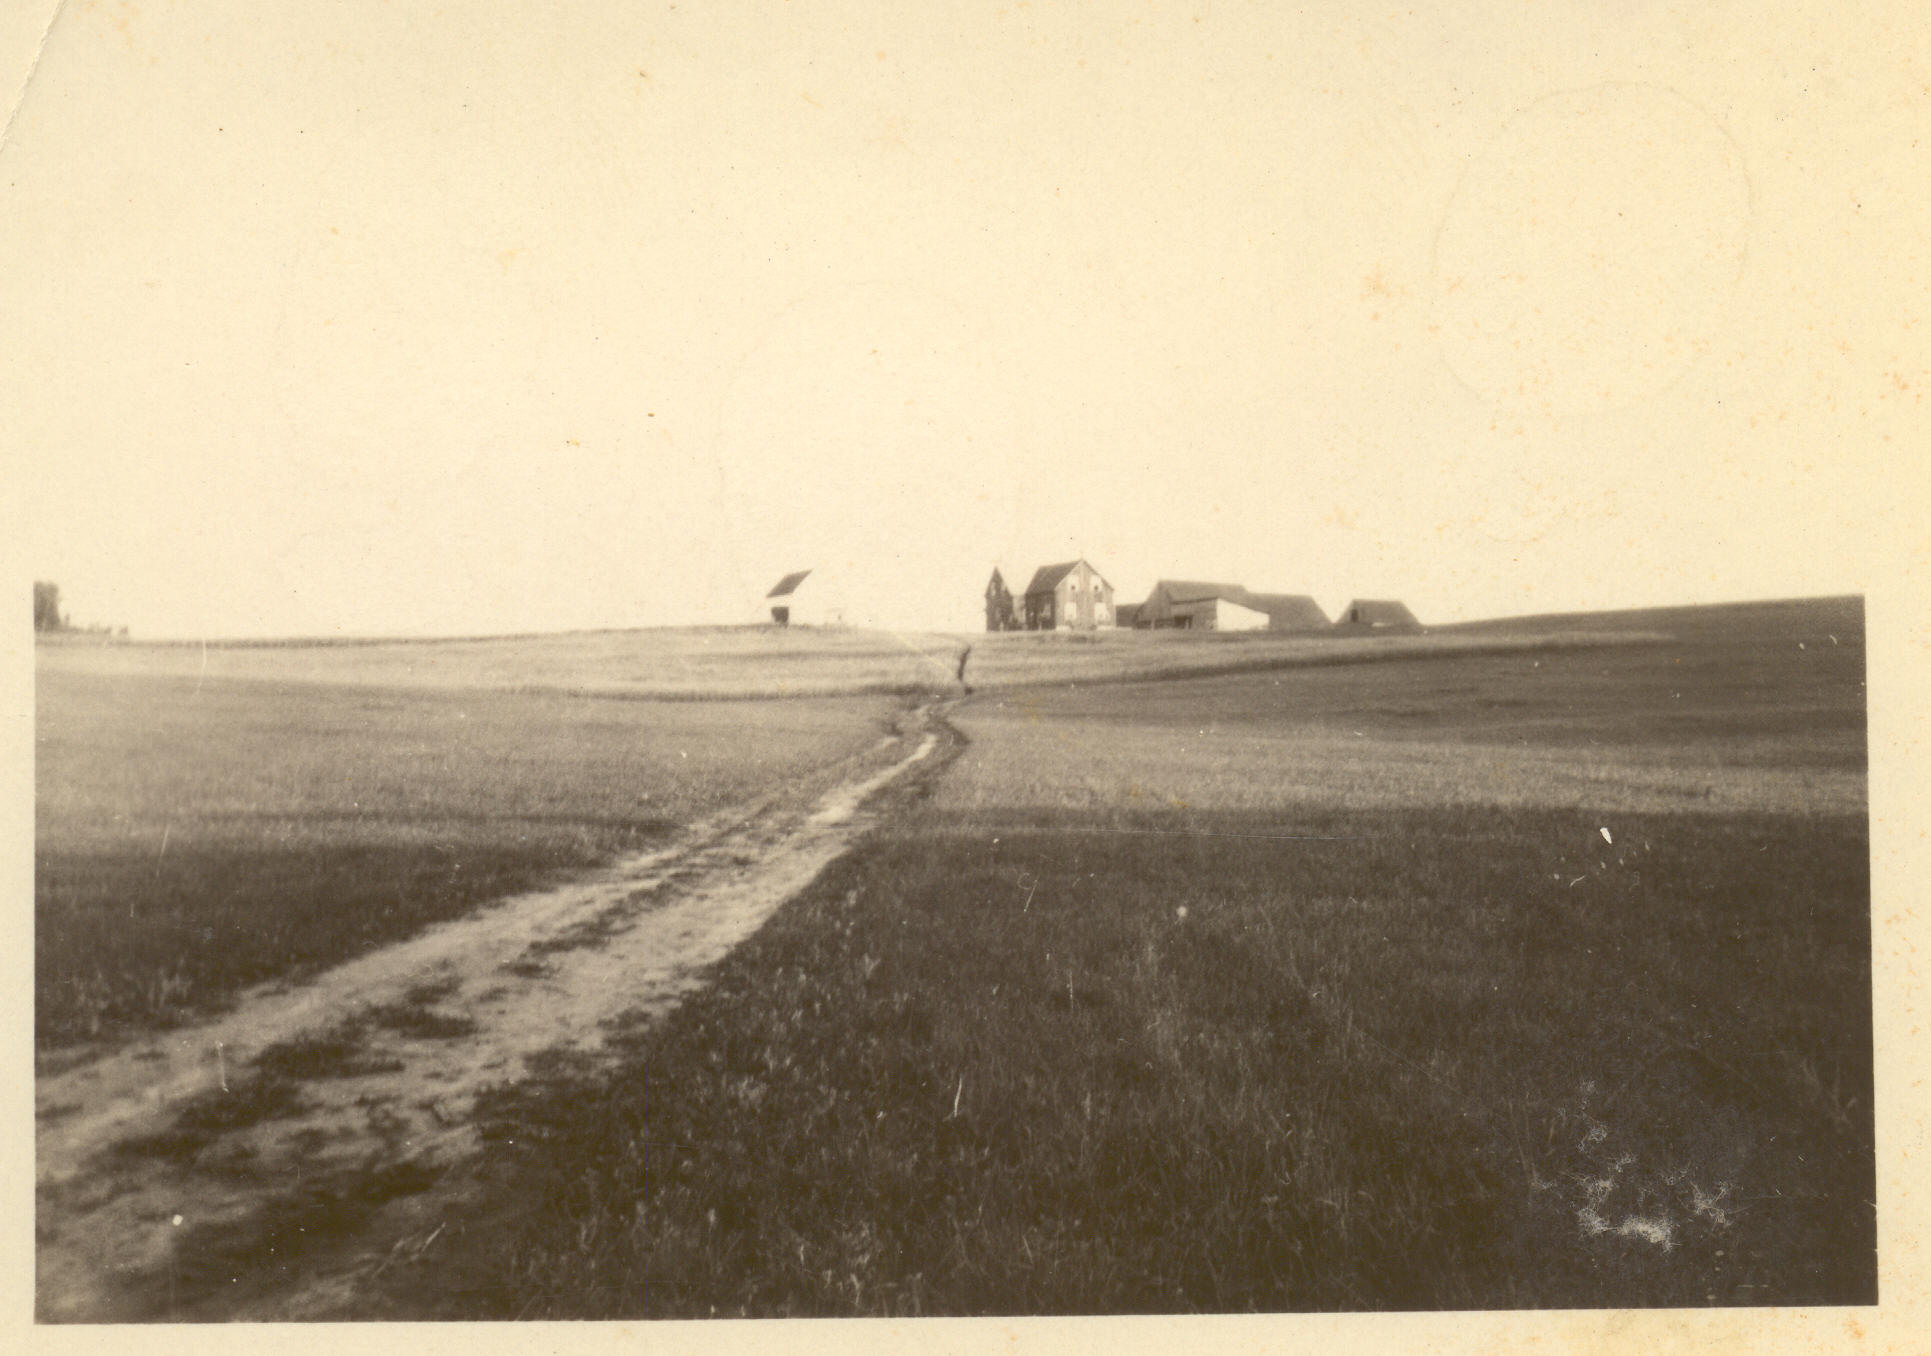 1930s:  Farm on hill.